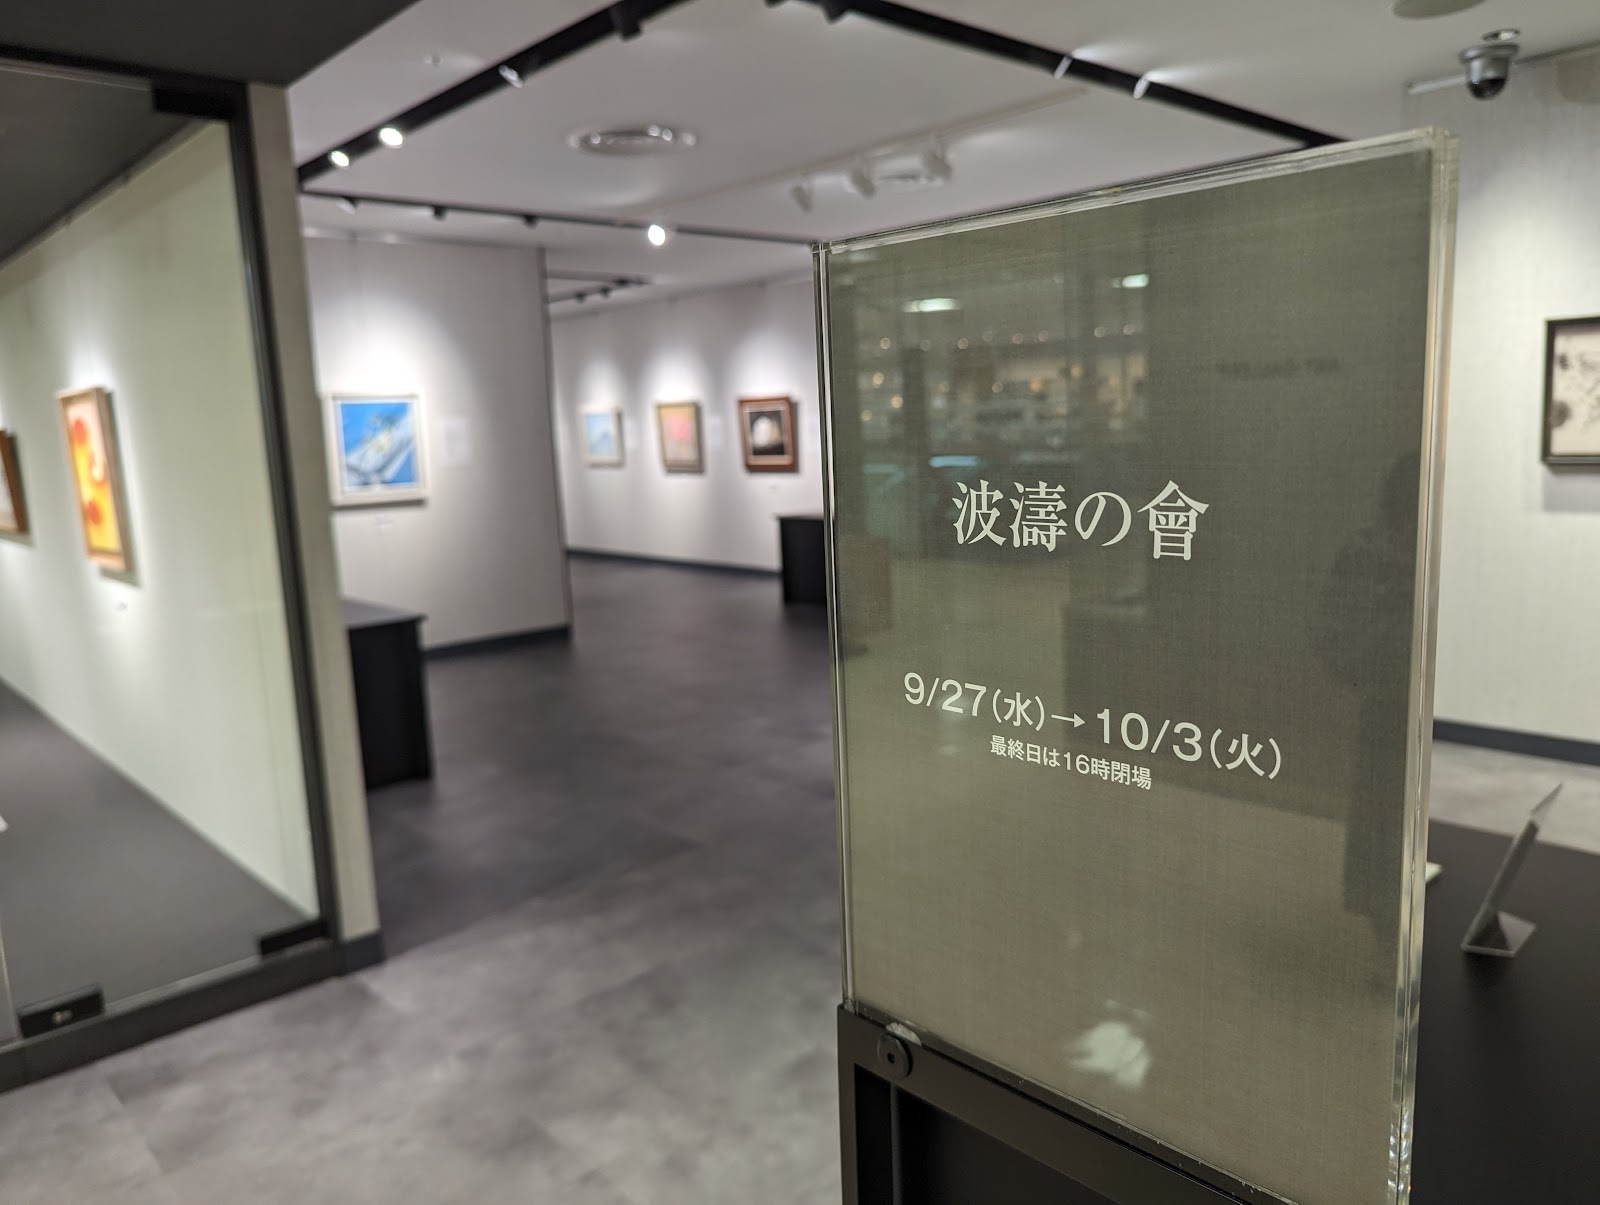 松坂屋上野店 美術画廊のイメージ